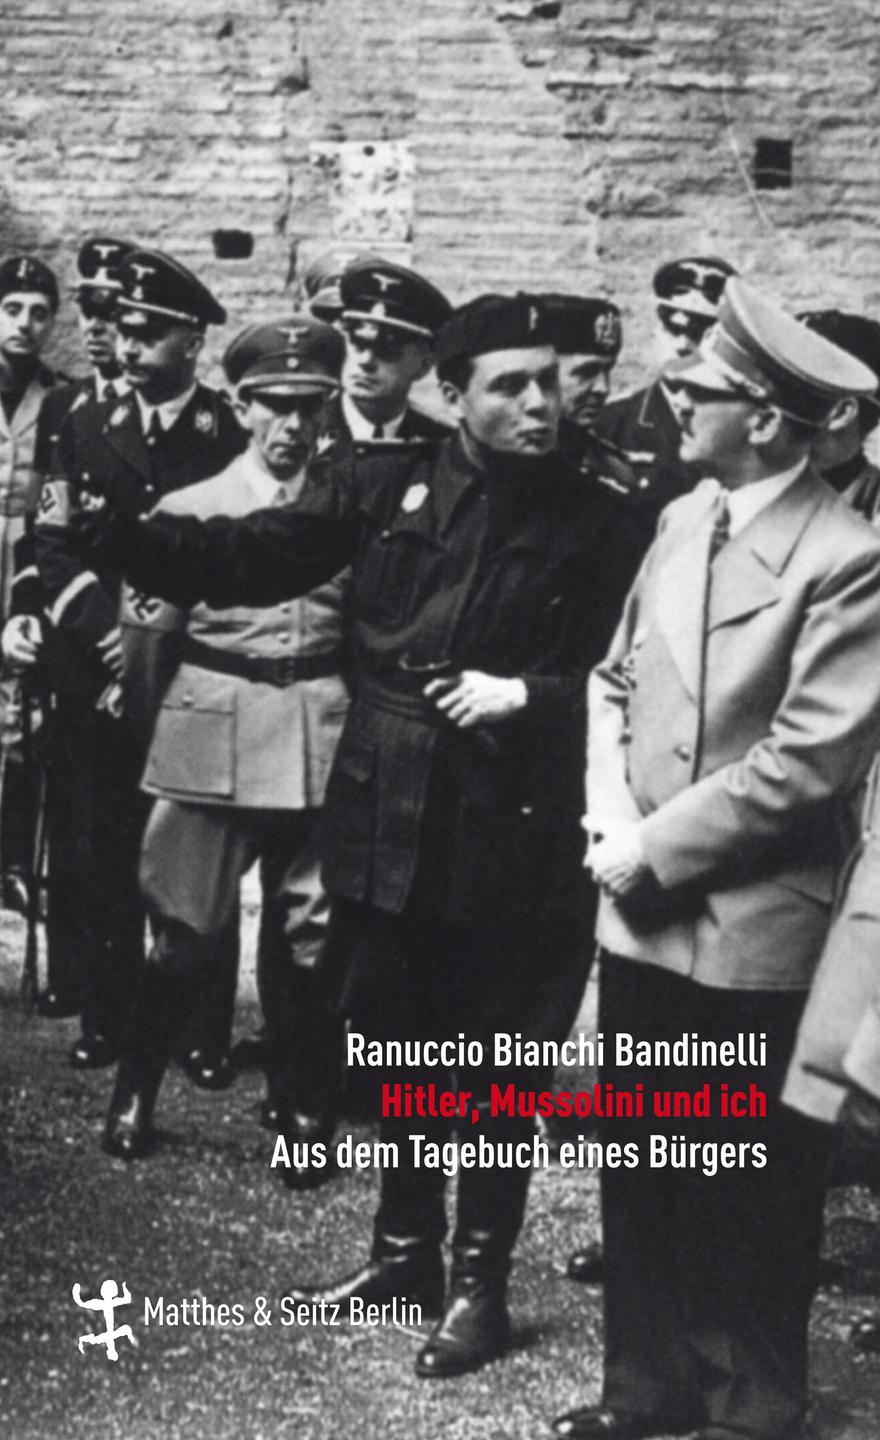 Cover: Ranuccio Bianchi Bandinelli "Hitler, Mussolini und ich"